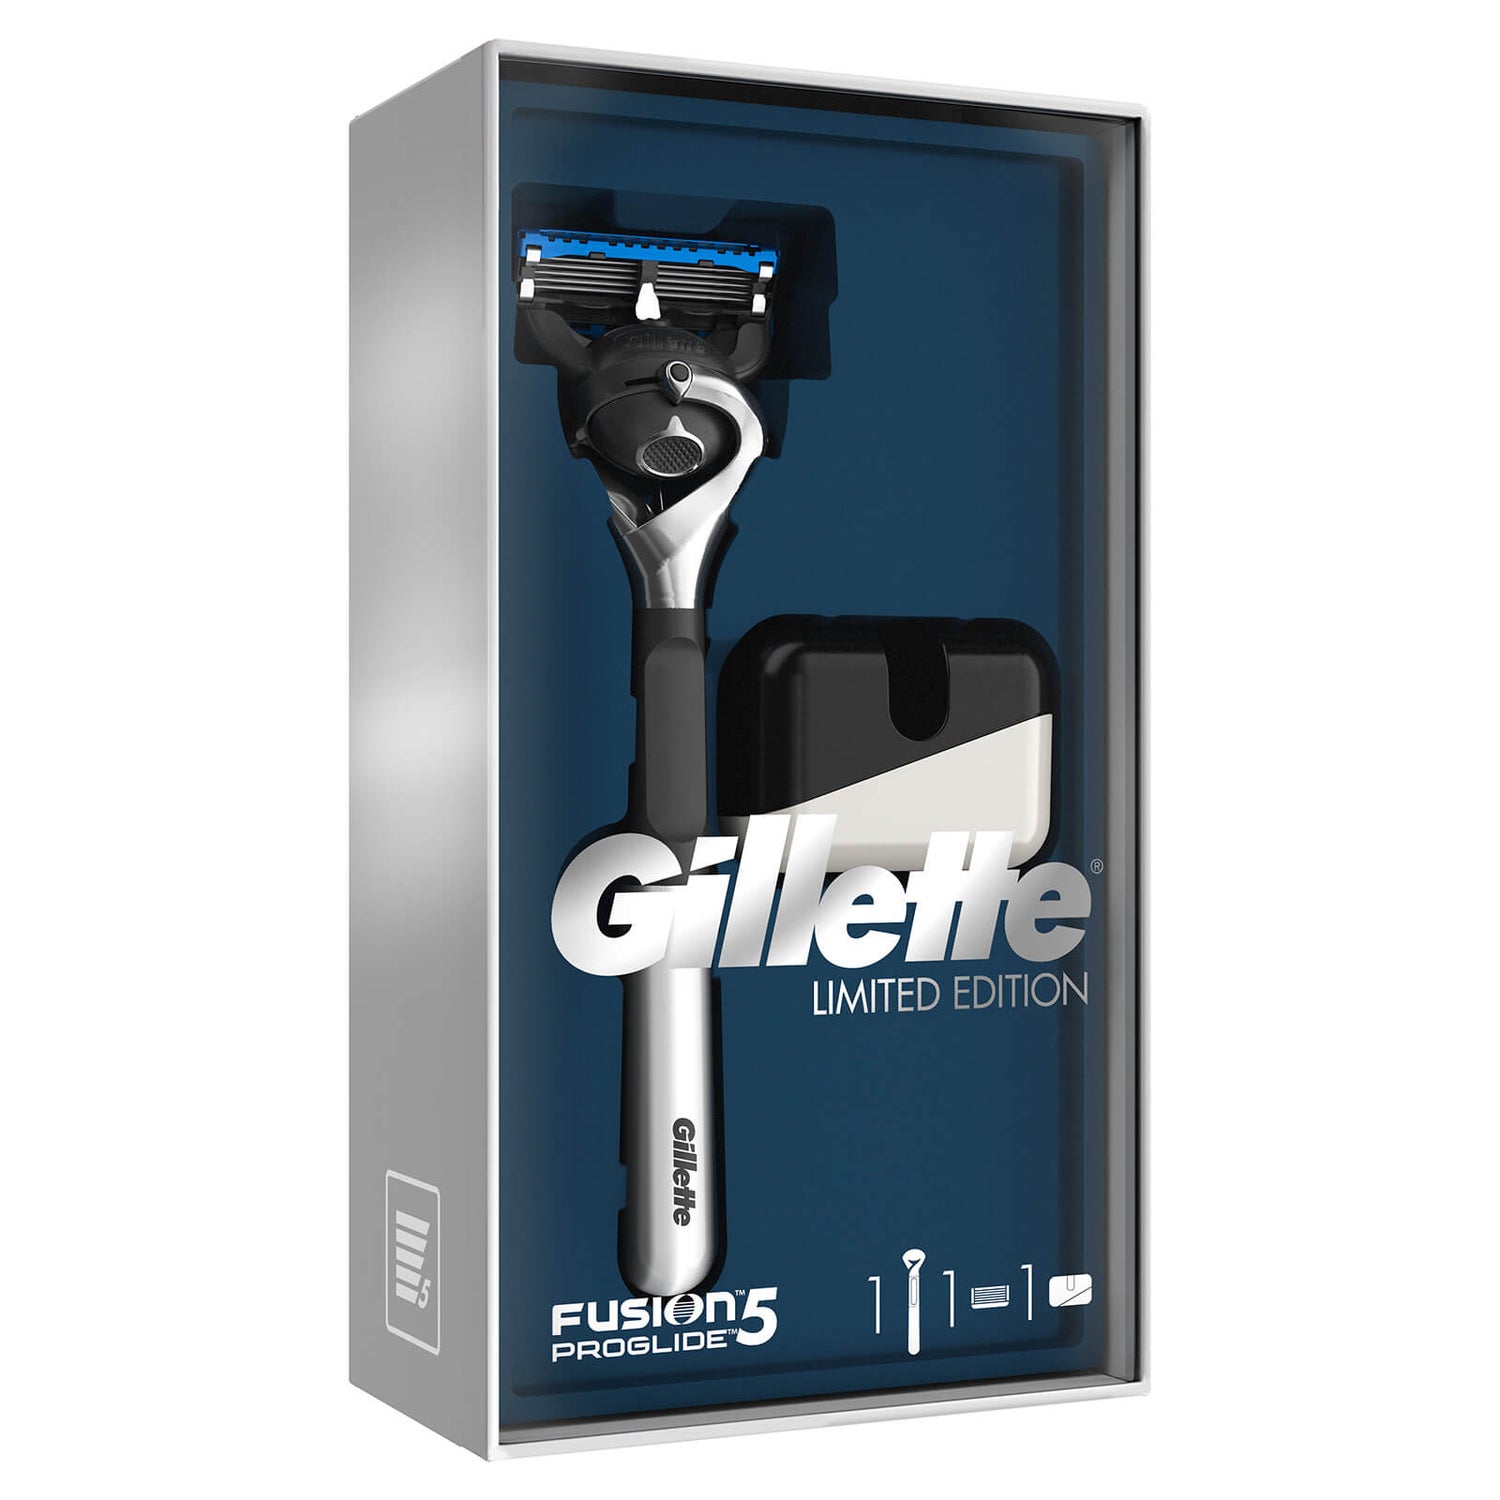 Limited Edition Gillette Fusion5 ProGlide Razor Gift Set - Chrome